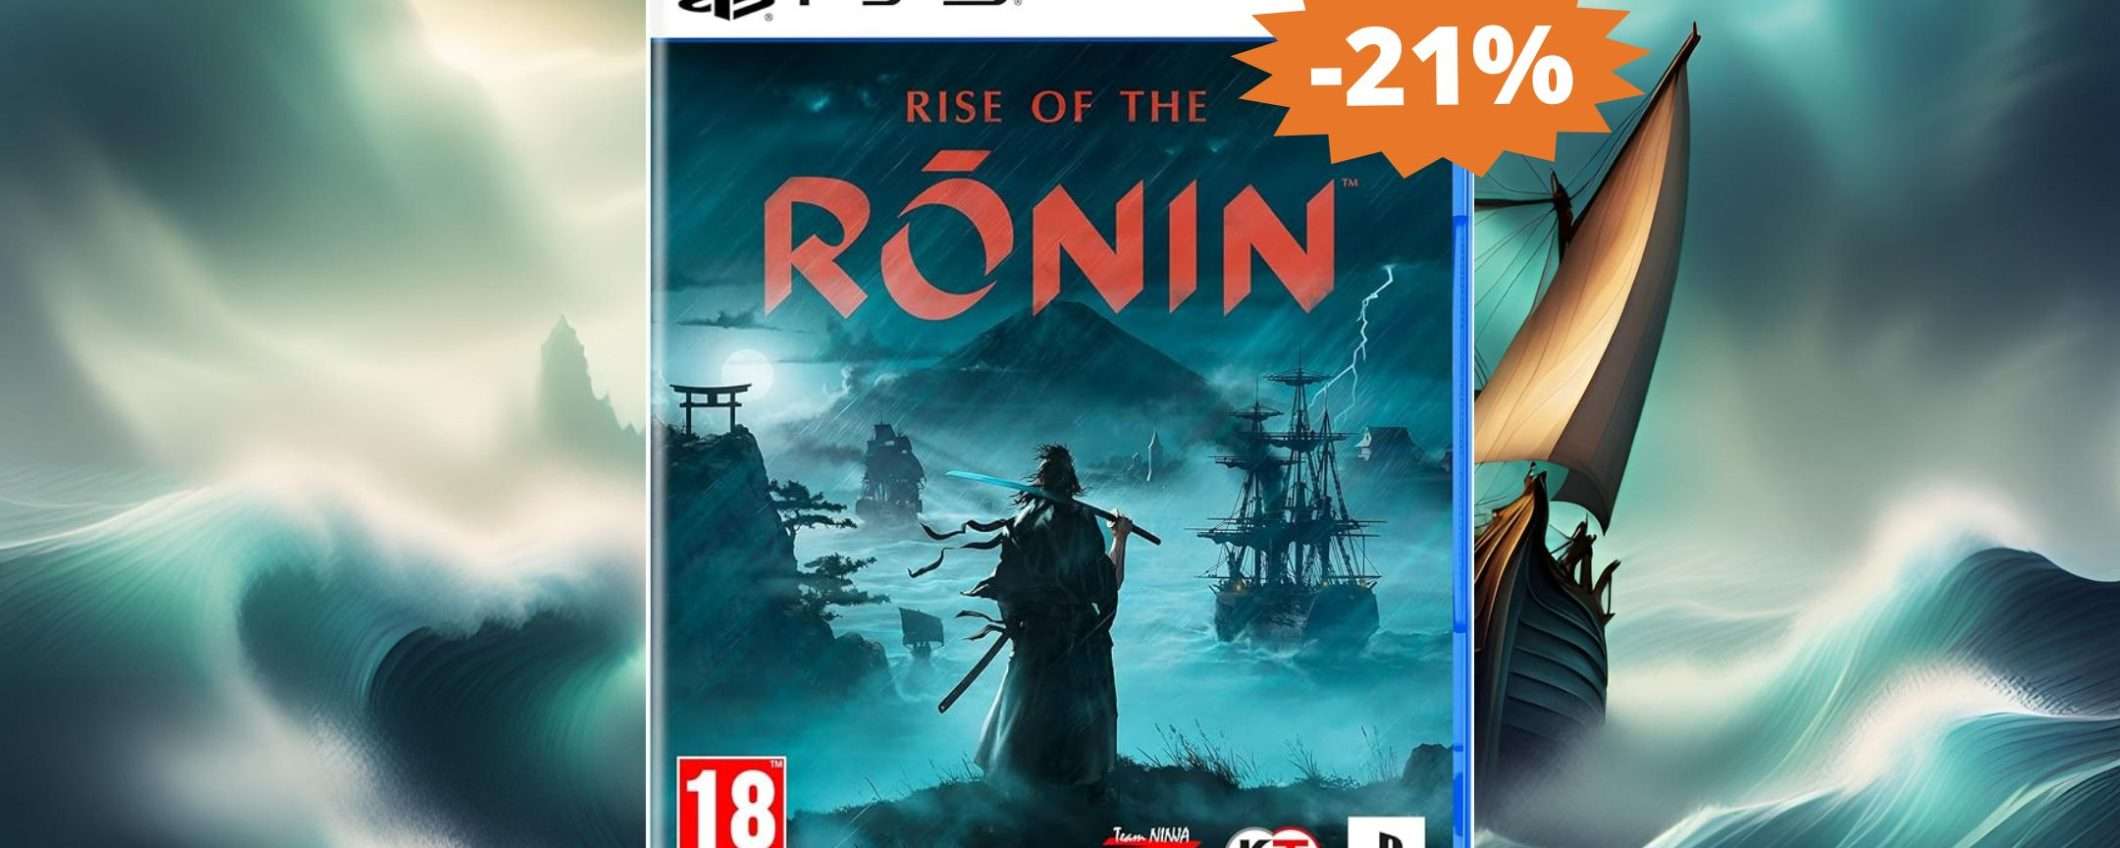 Rise of the Ronin per PS5: un'AVVENTURA da non perdere (-21%)